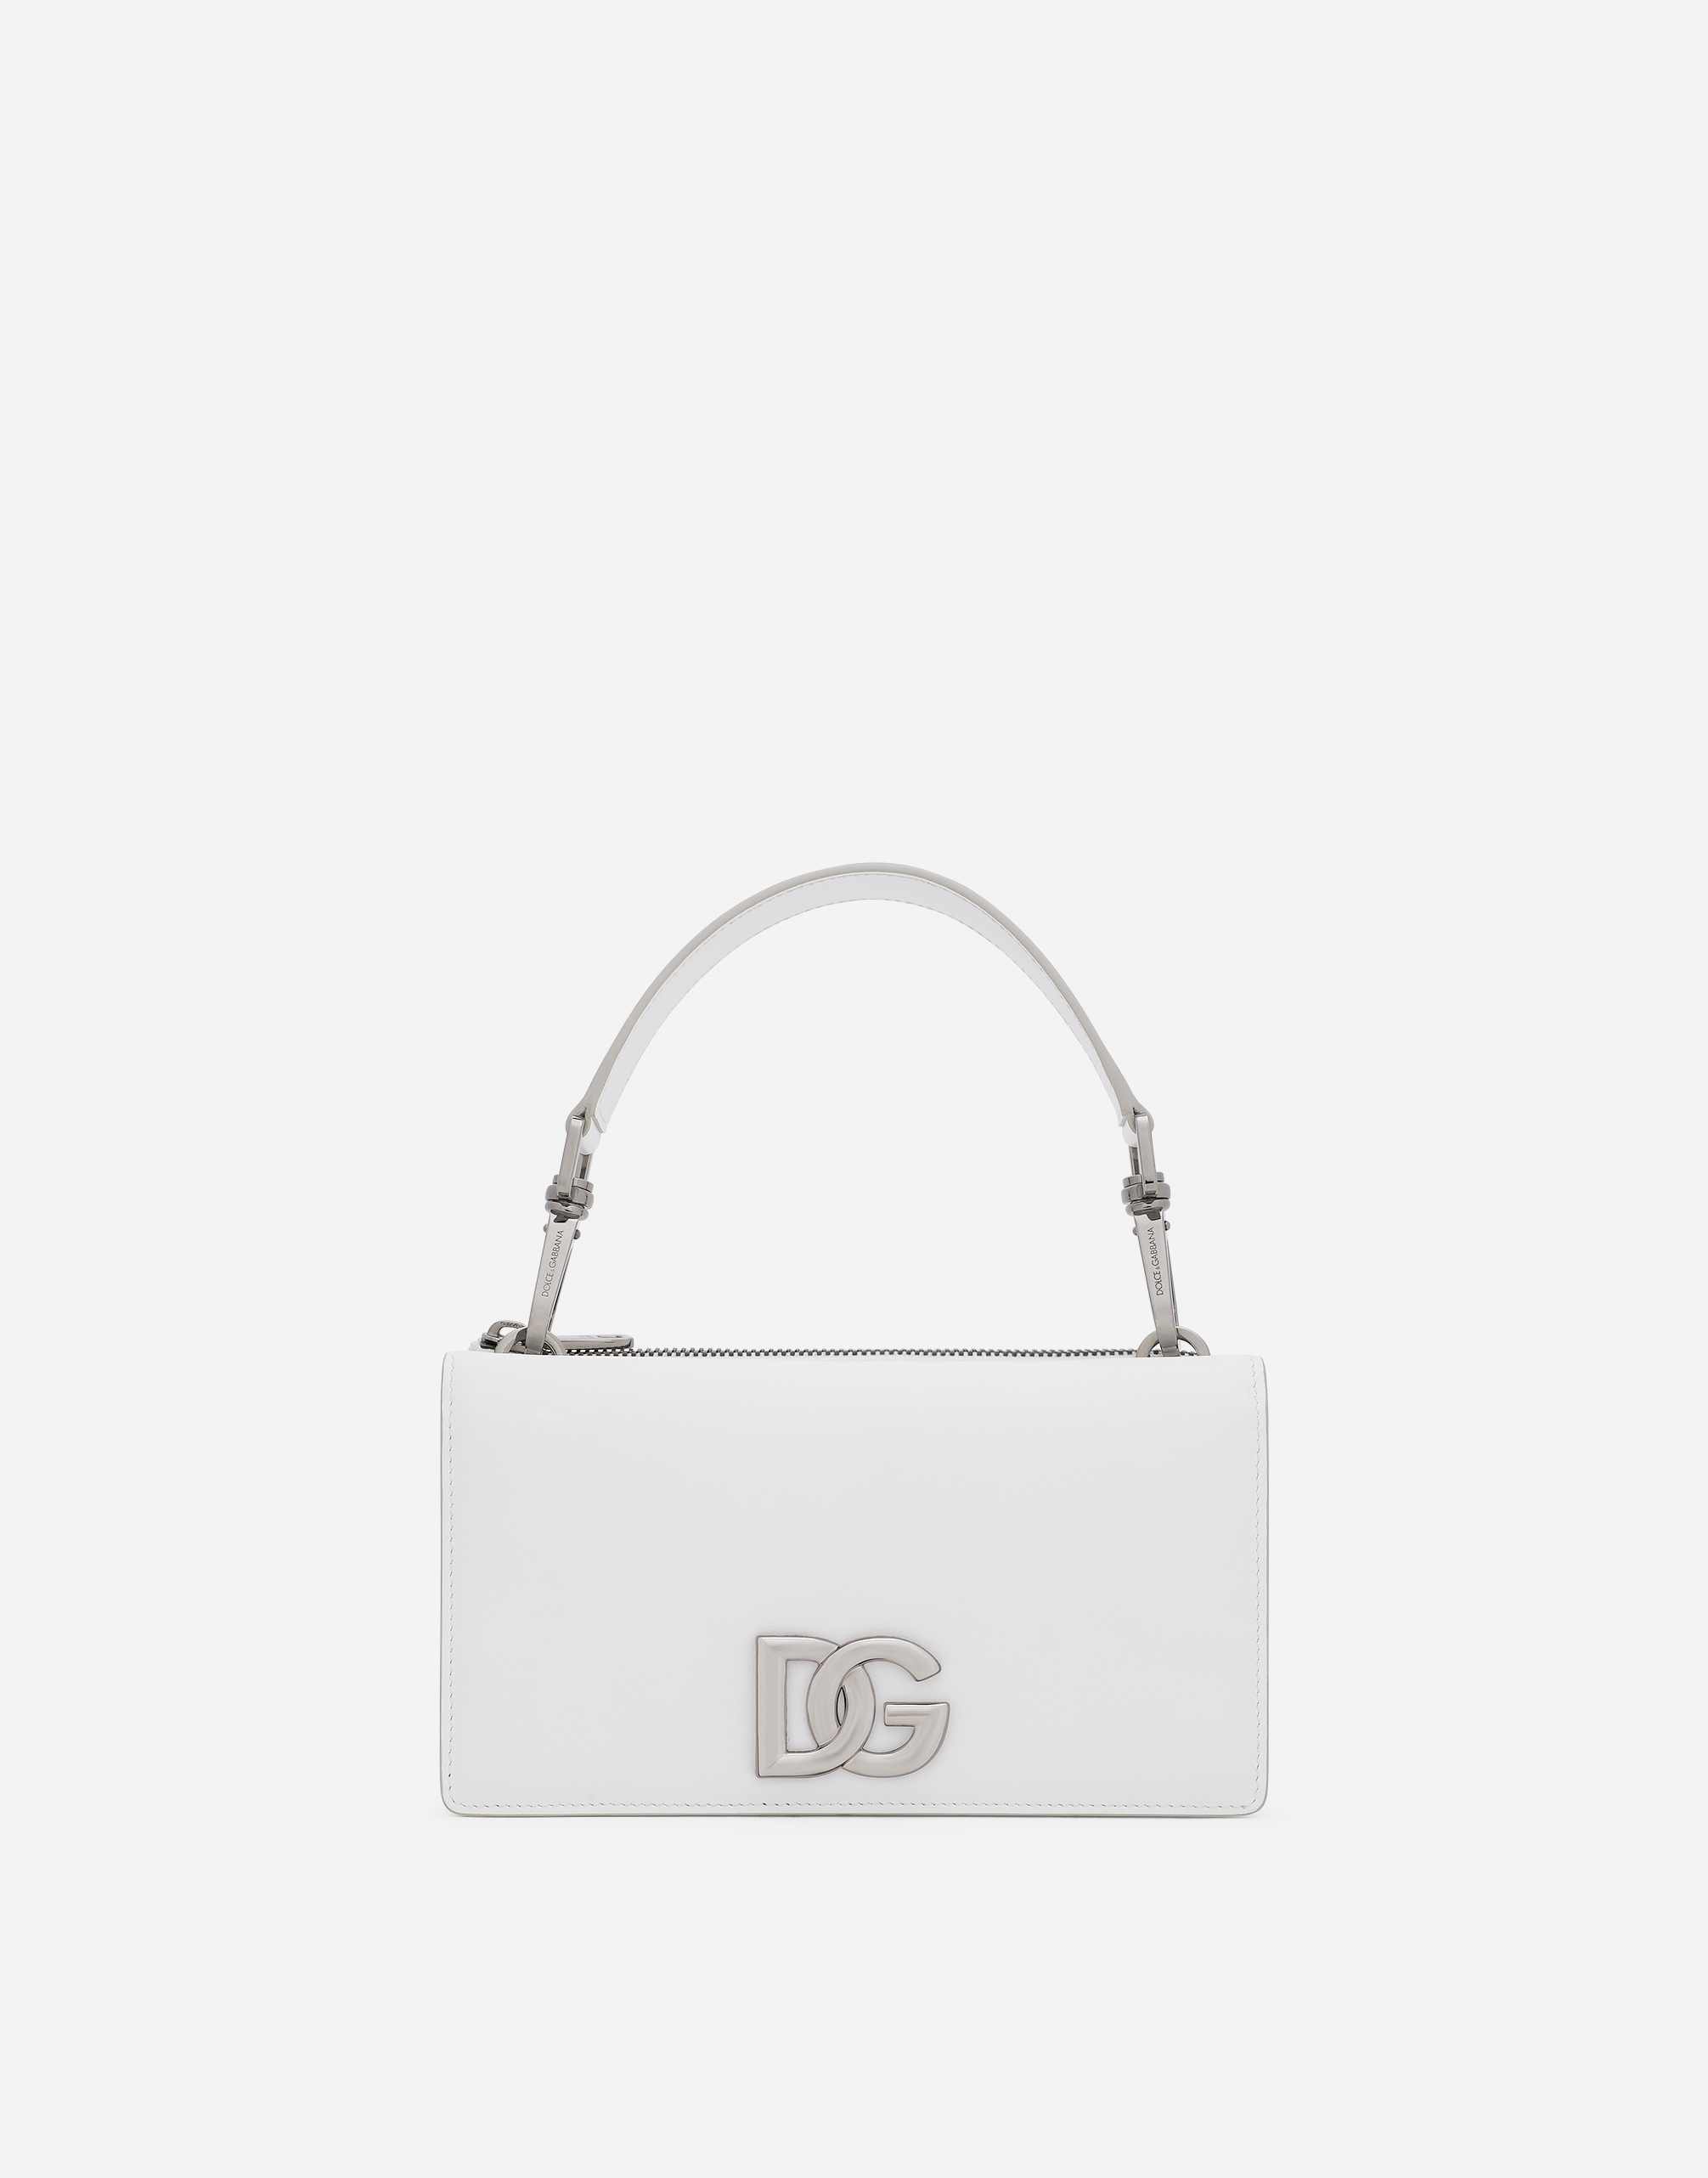 Mini handbag with strap in White